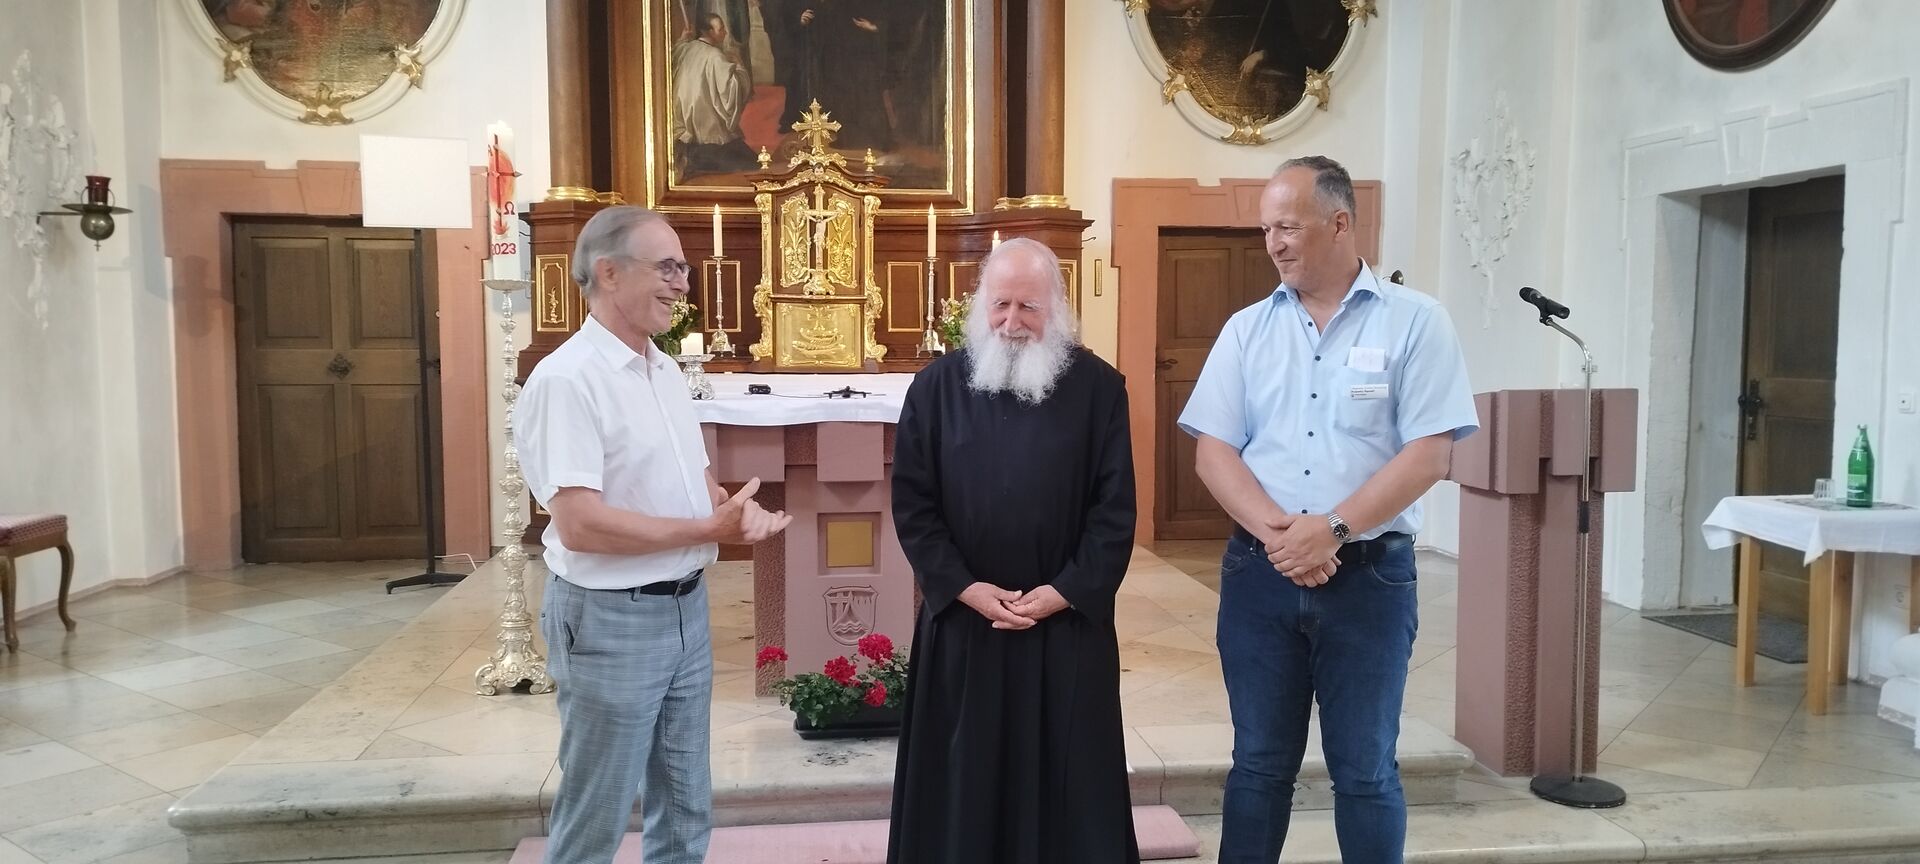 Pater Anselm Grün mit Herrn Ranelli und Herrn Fronczek